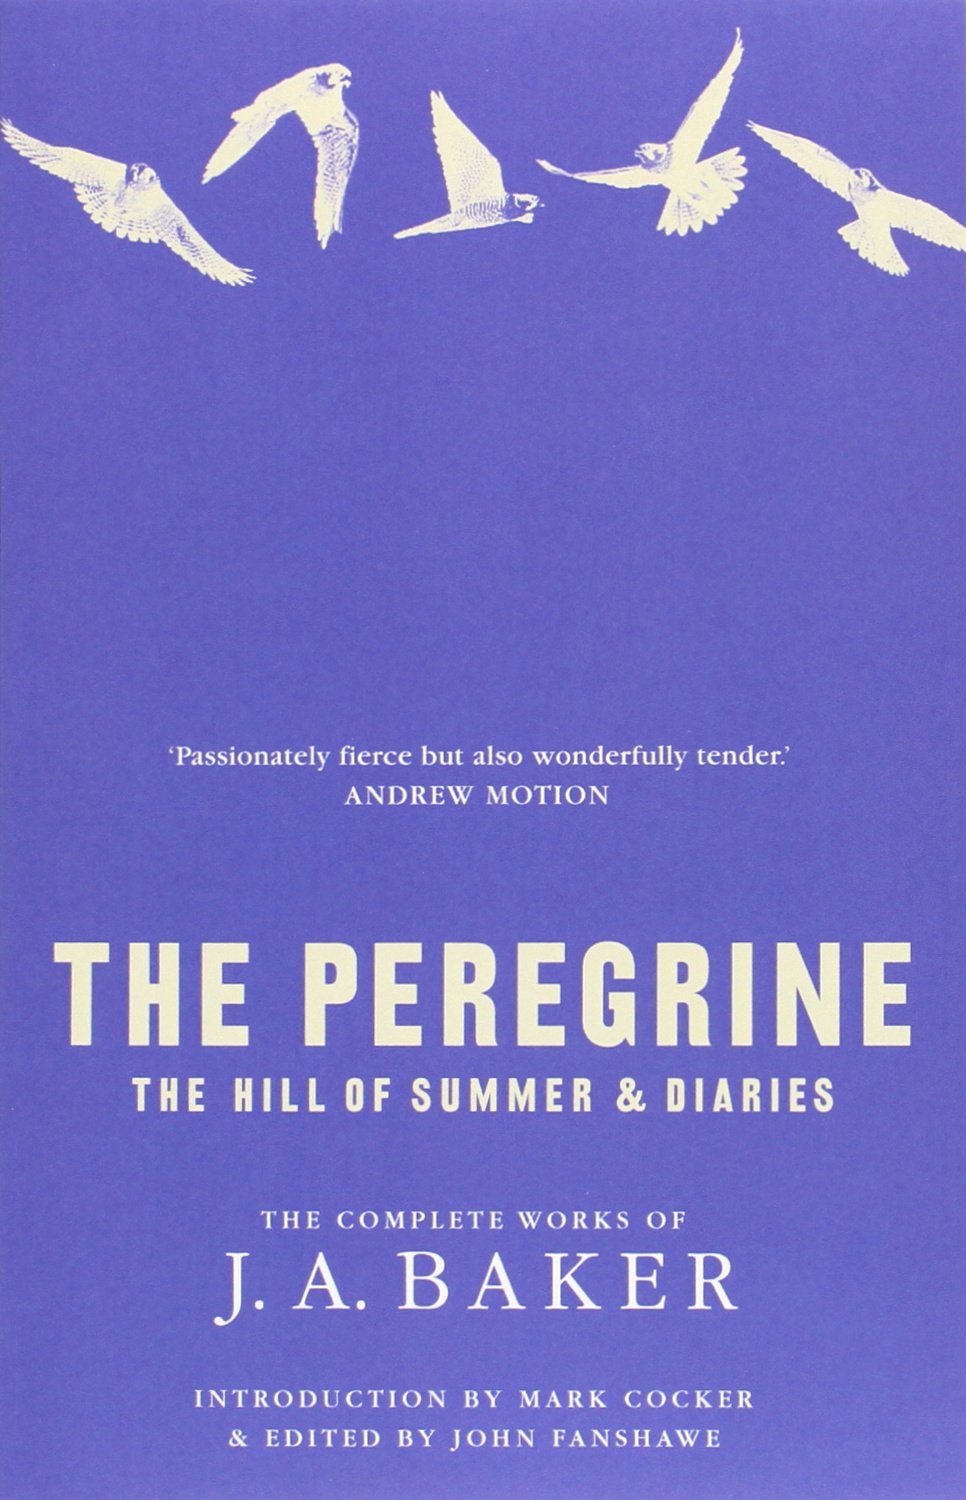 The Peregrine